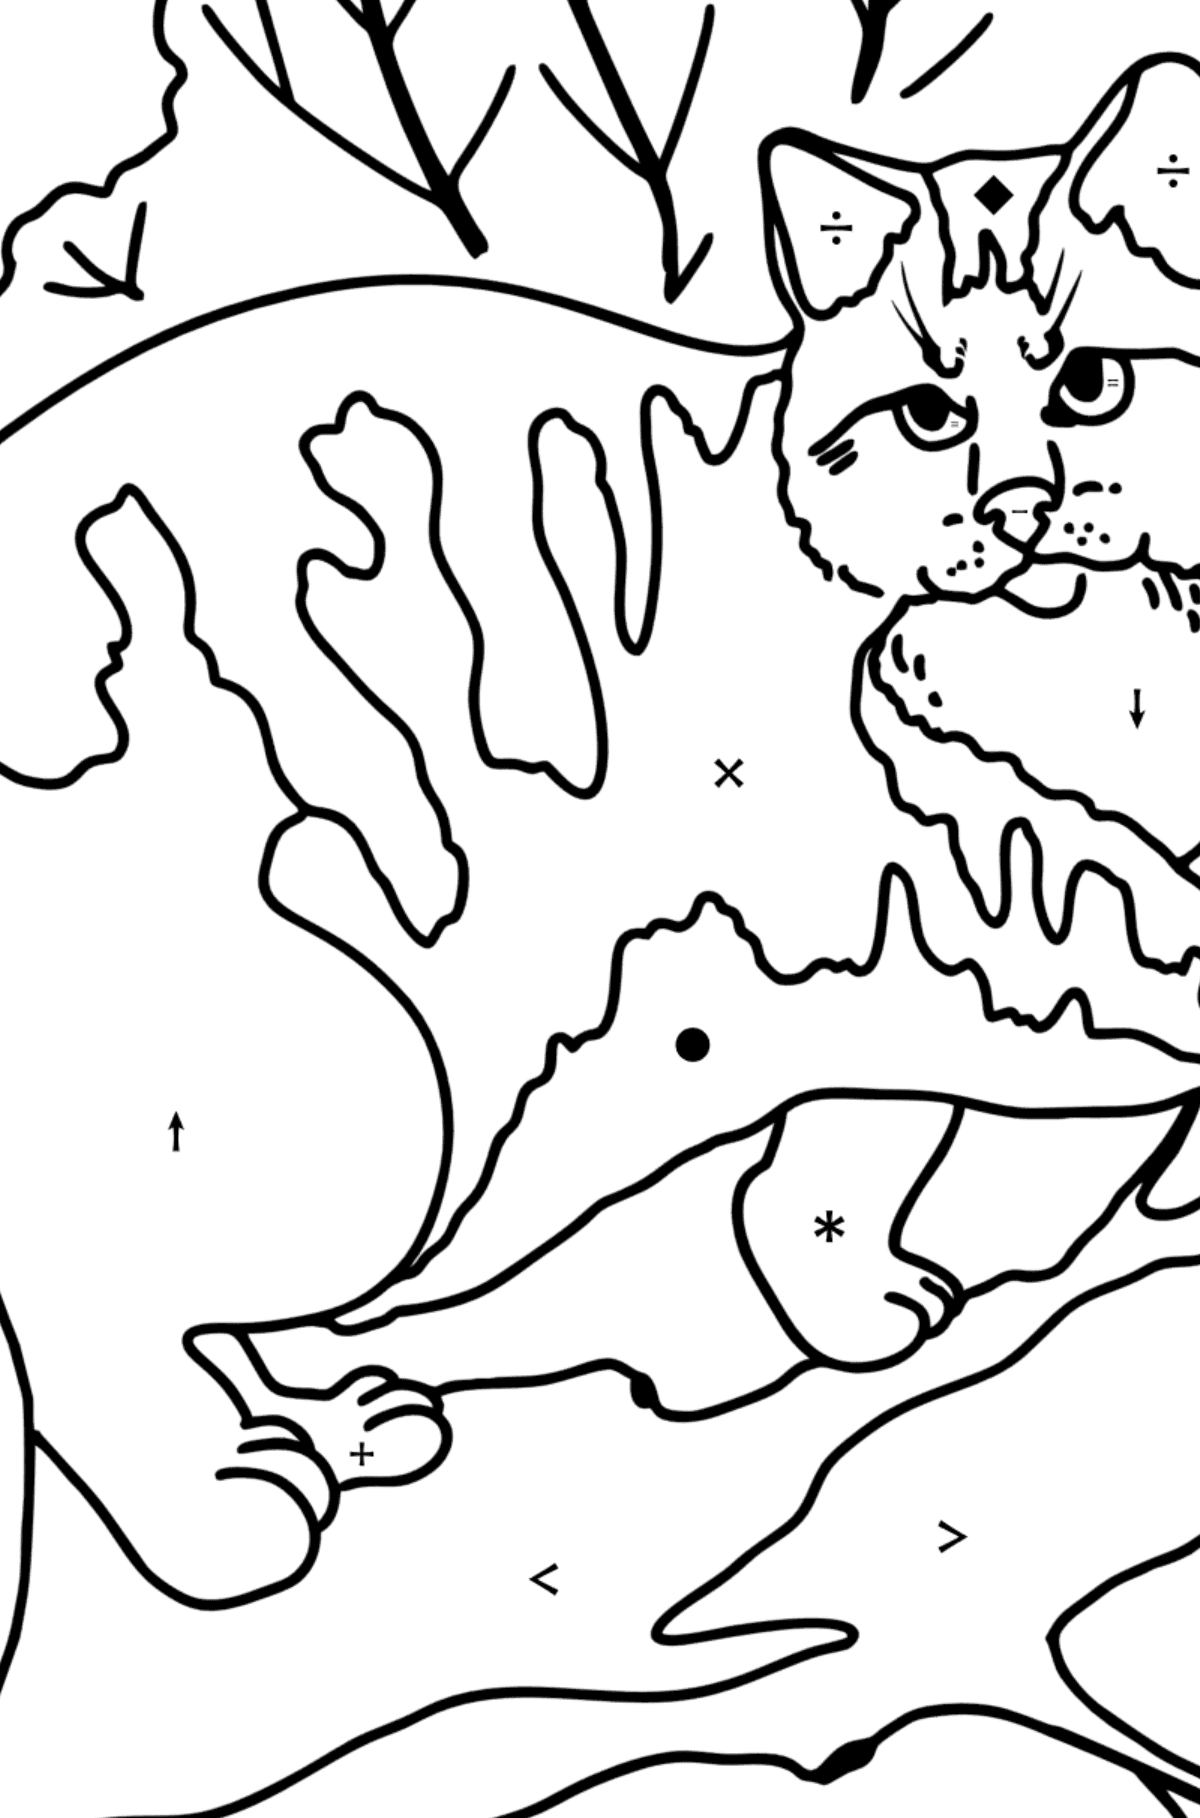 Kolorowanka Kot dzikiego lasu - Kolorowanie według symboli dla dzieci